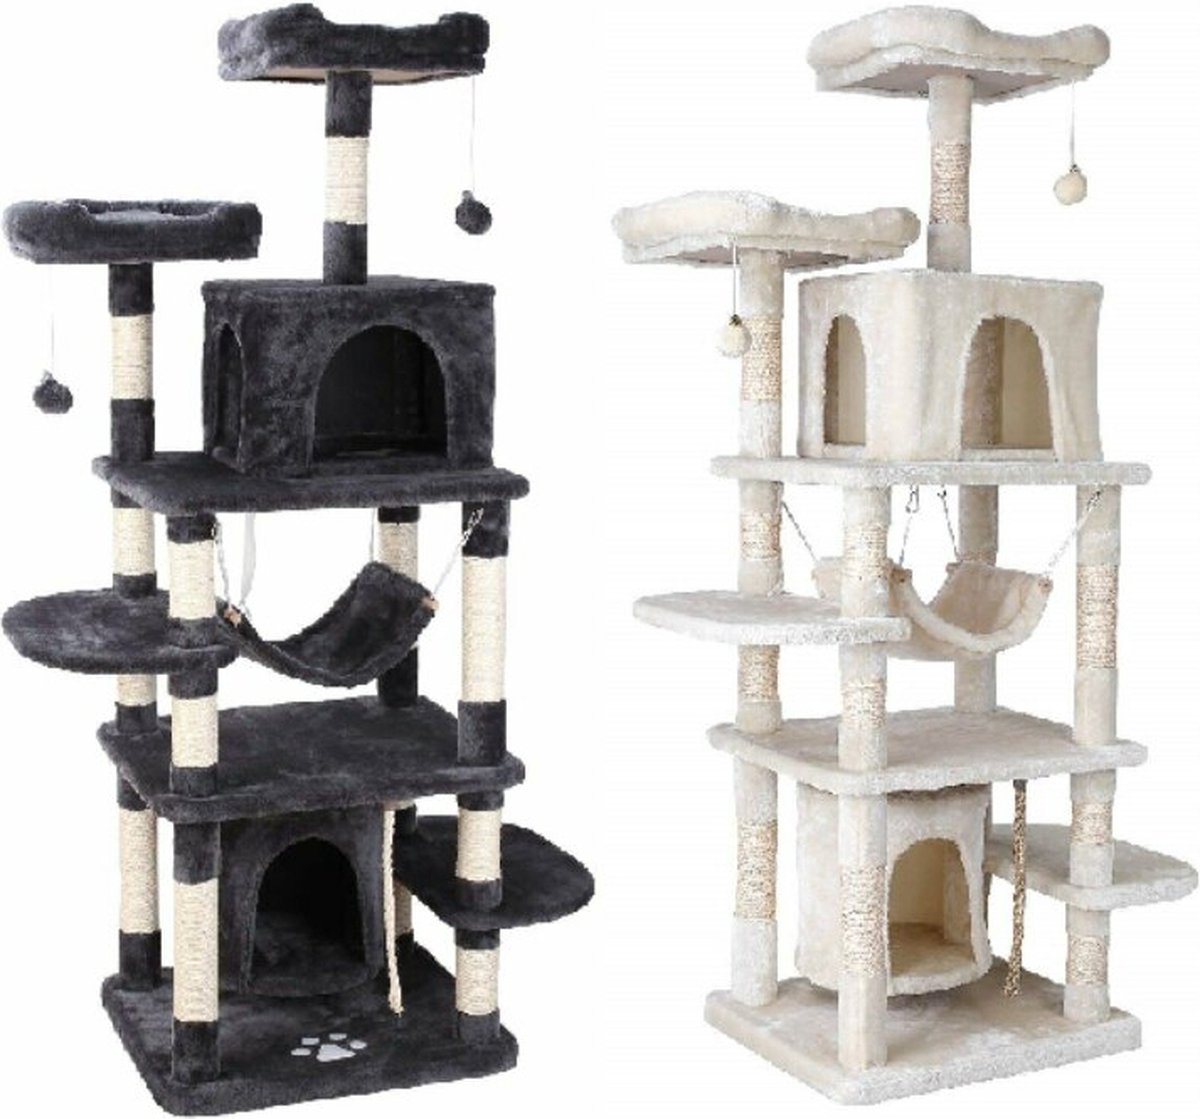 Luxe Kattentoren - Grote Krabpaal - Krabpaal met Hangmat - Speeltoren voor Katten - Kattentoren met Slaaphok - Kattenspeeltjes - 170 cm Hoog - Donkergrijs of Beige